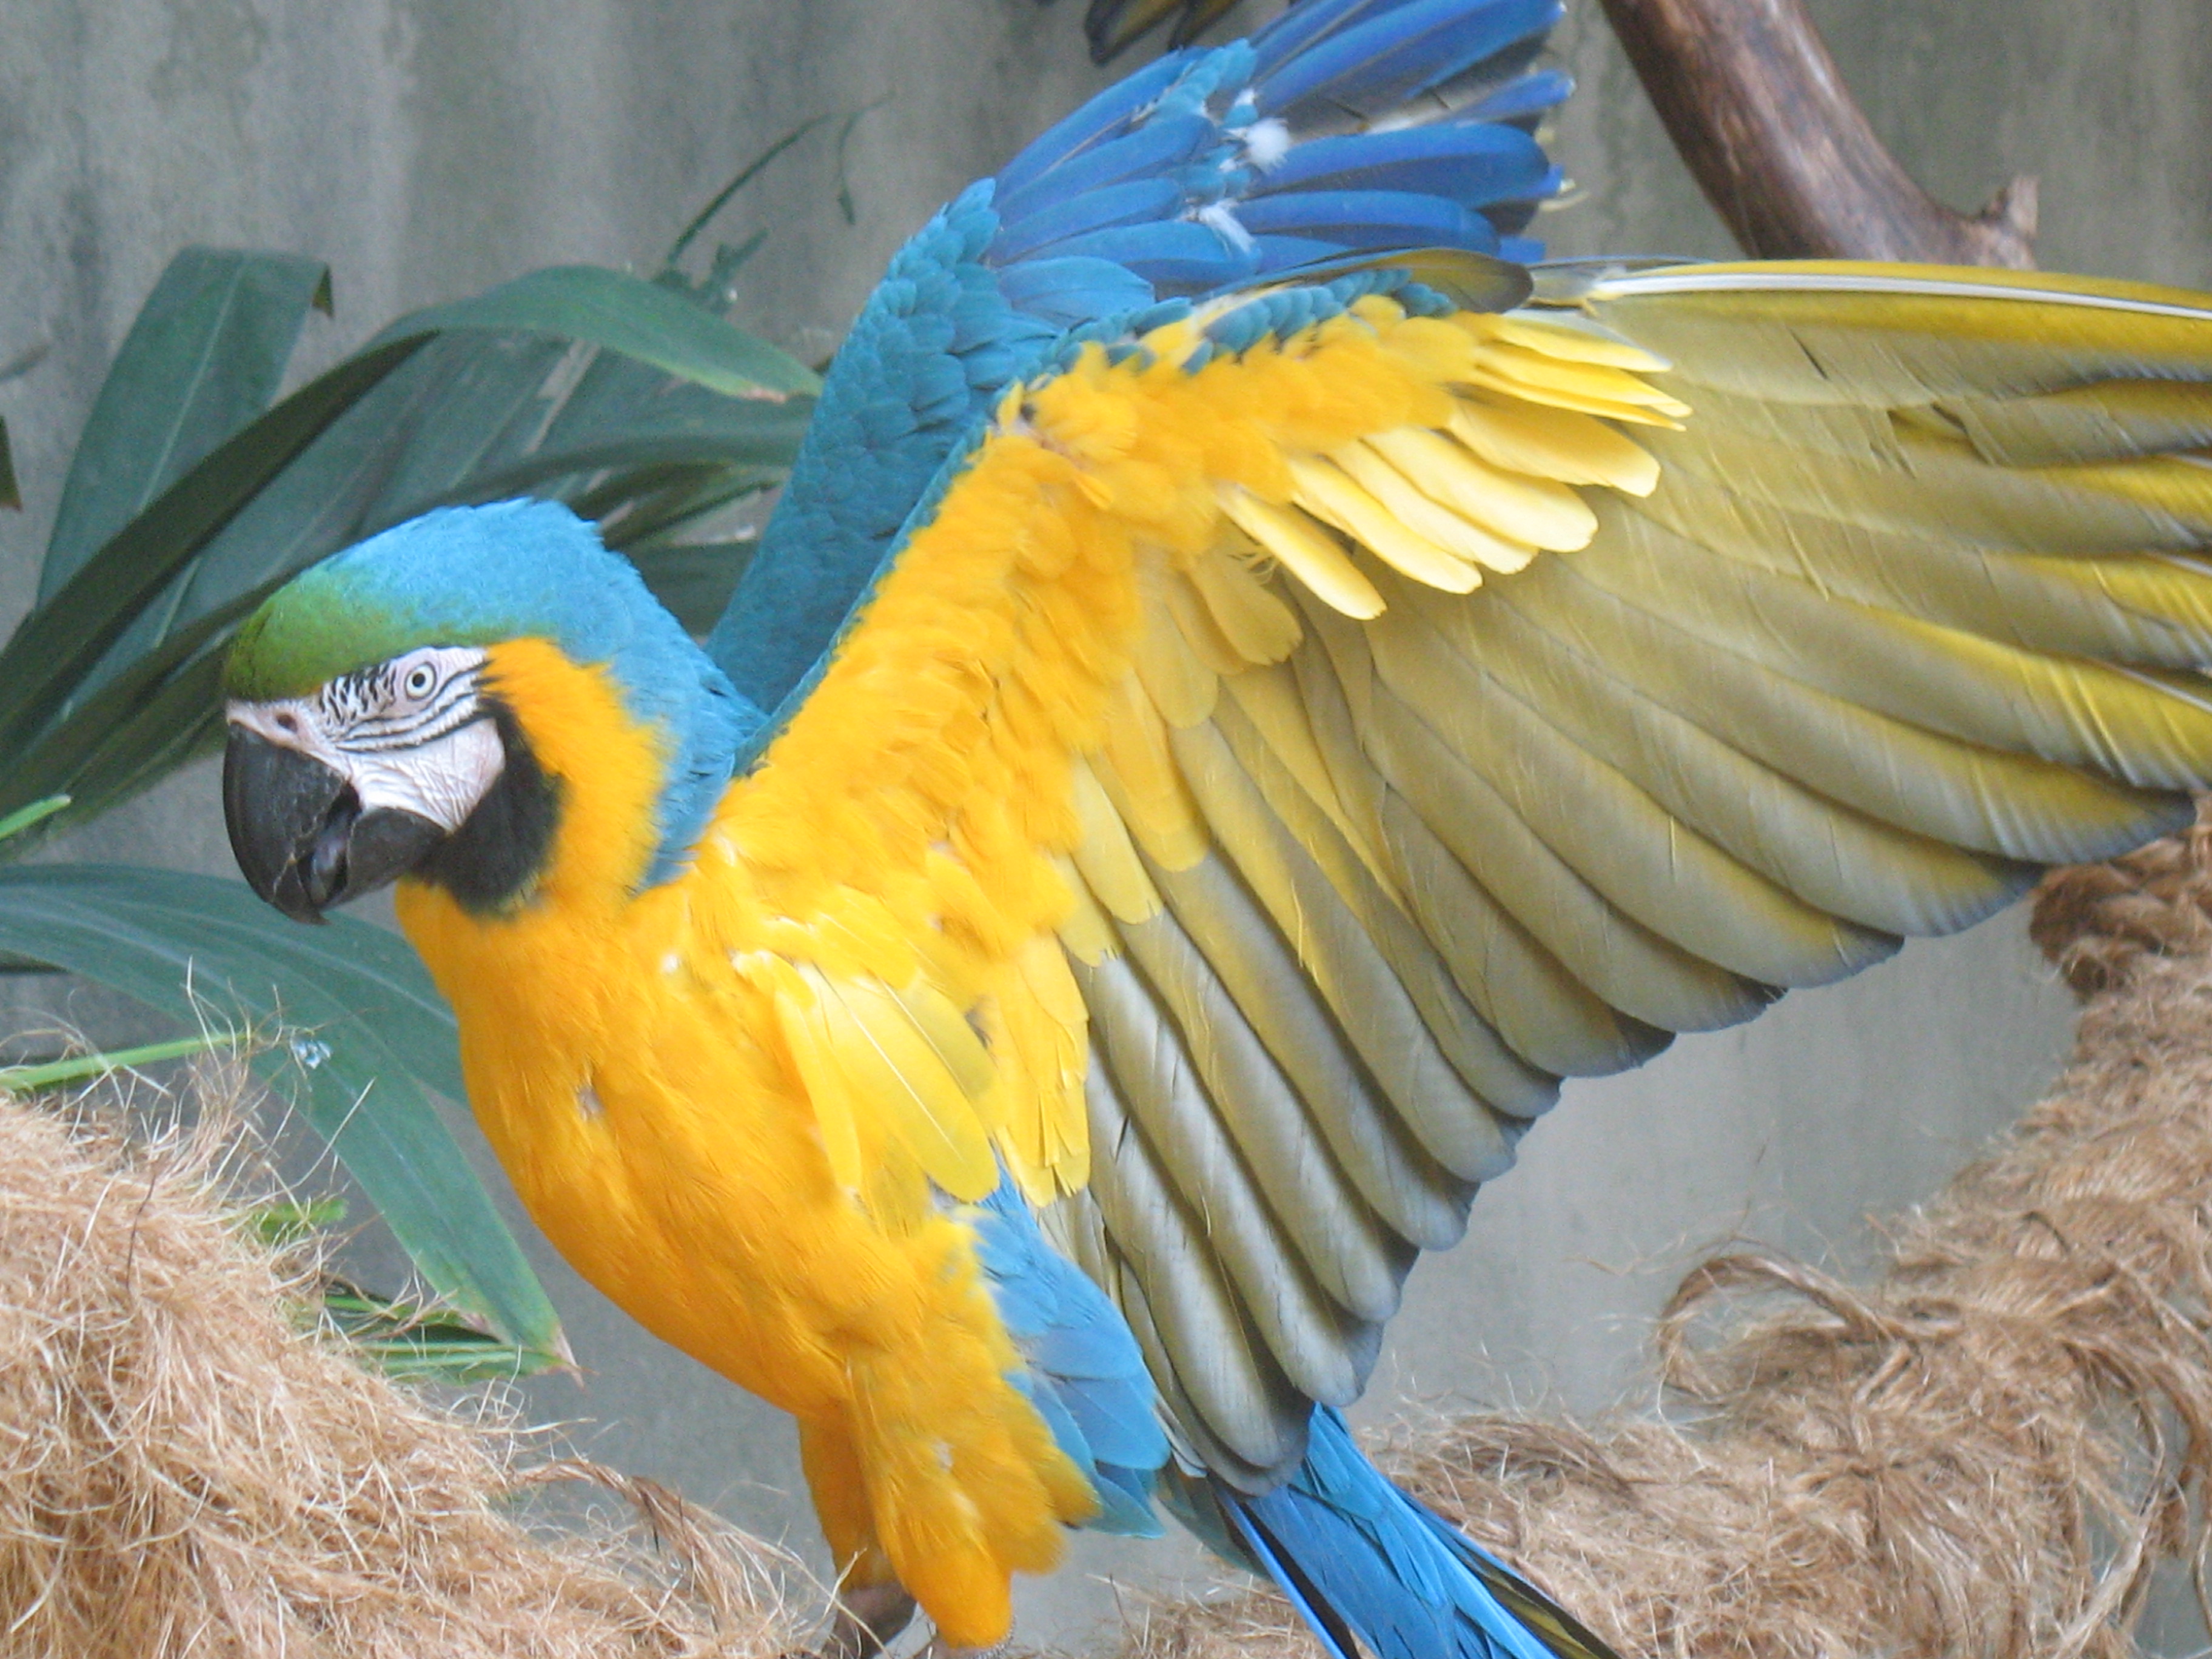 Blue+macaw+parrots